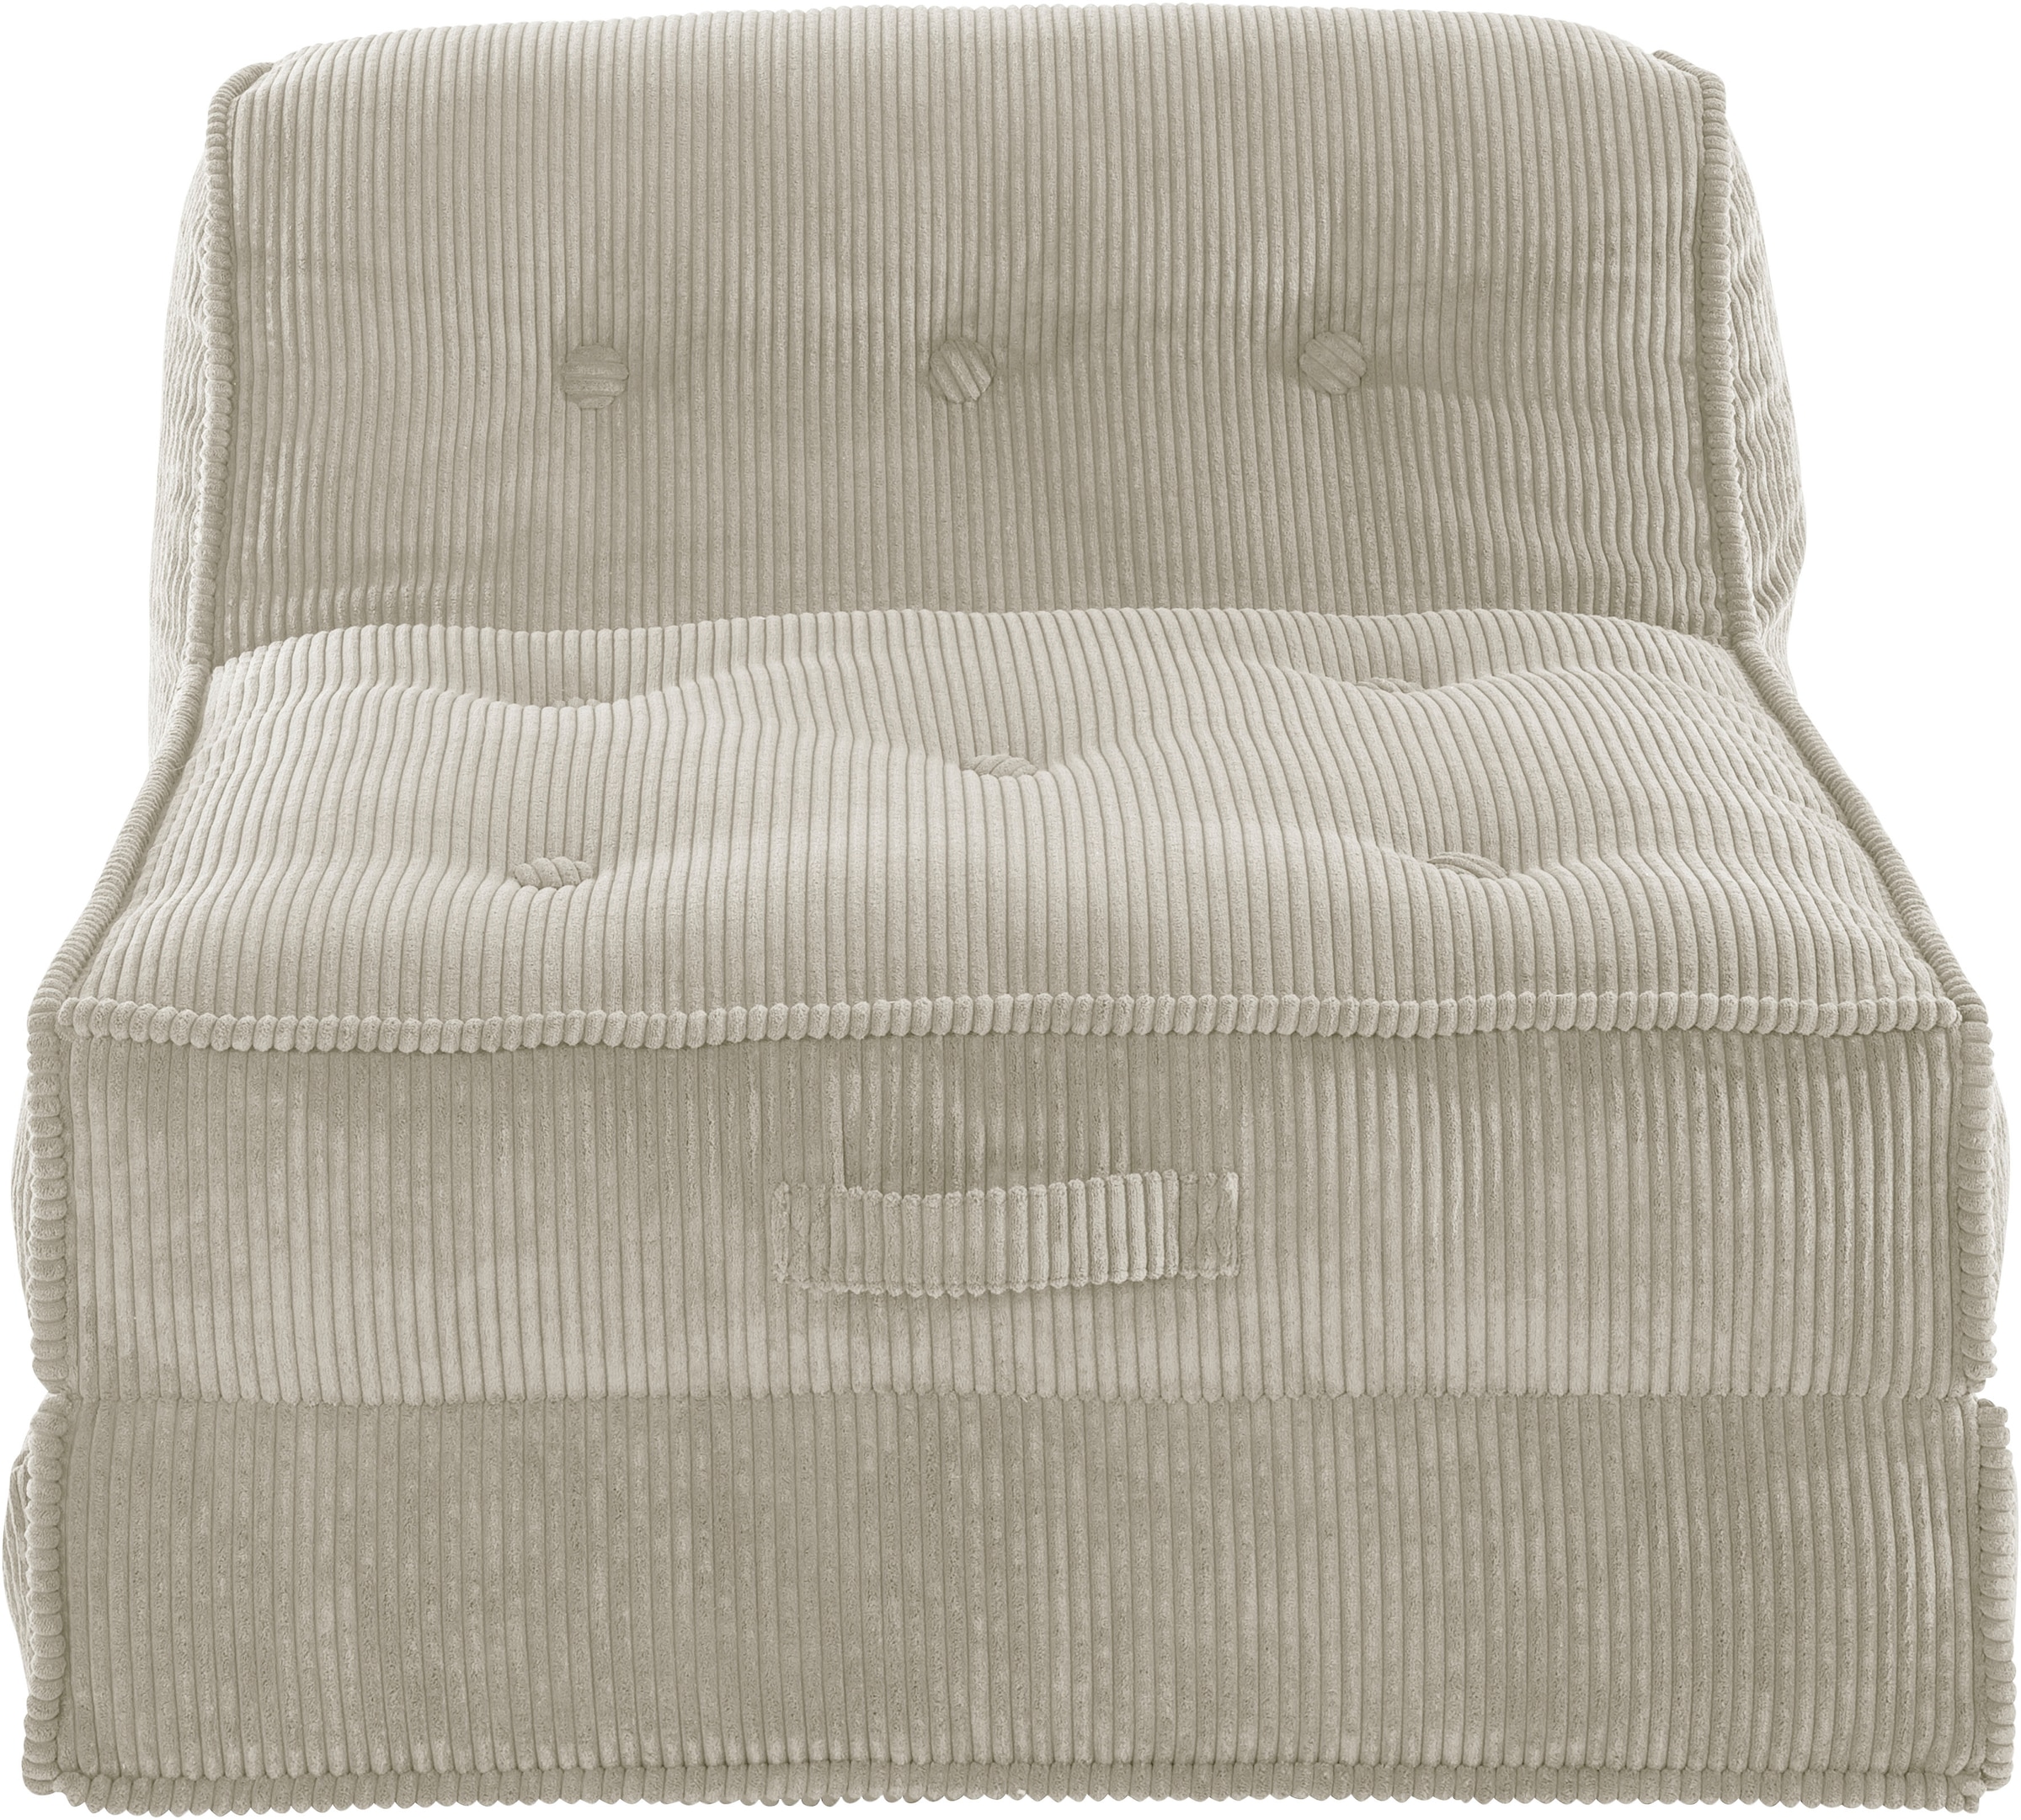 INOSIGN Sessel »Pia«, Loungesessel aus Cord, in 2 Größen, mit Schlaffunktion, Pouf-Funktion.